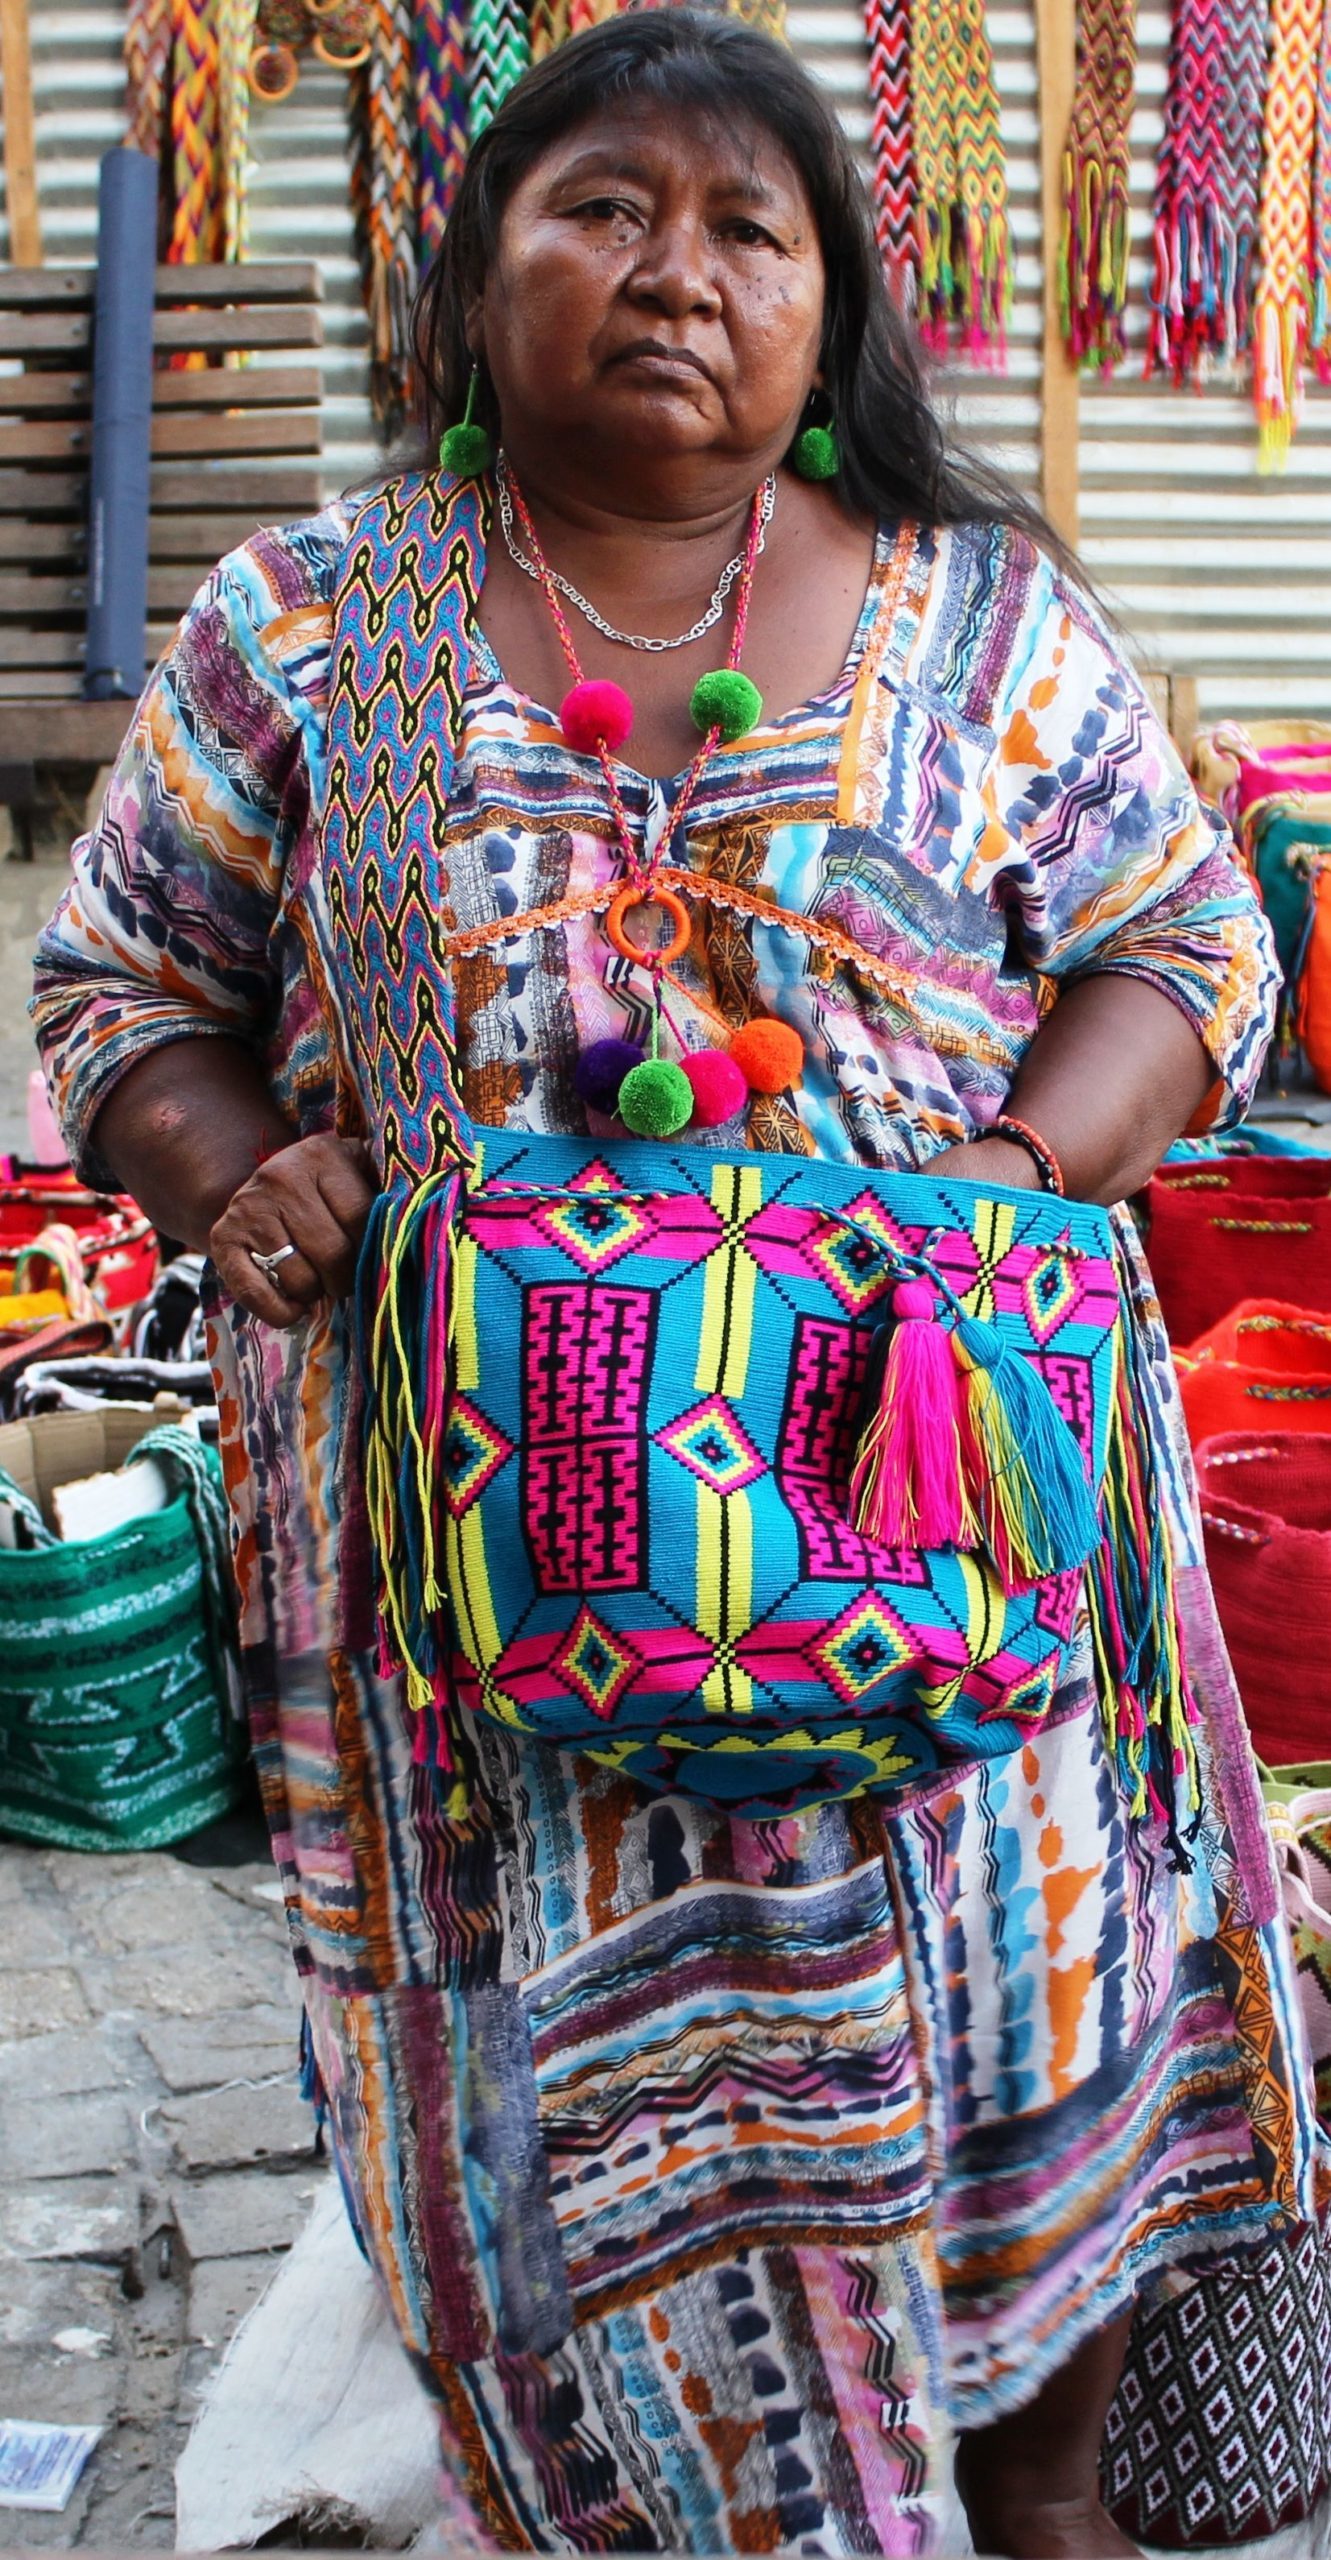 Une femme amérindienne de Colombie portant des habits colorés